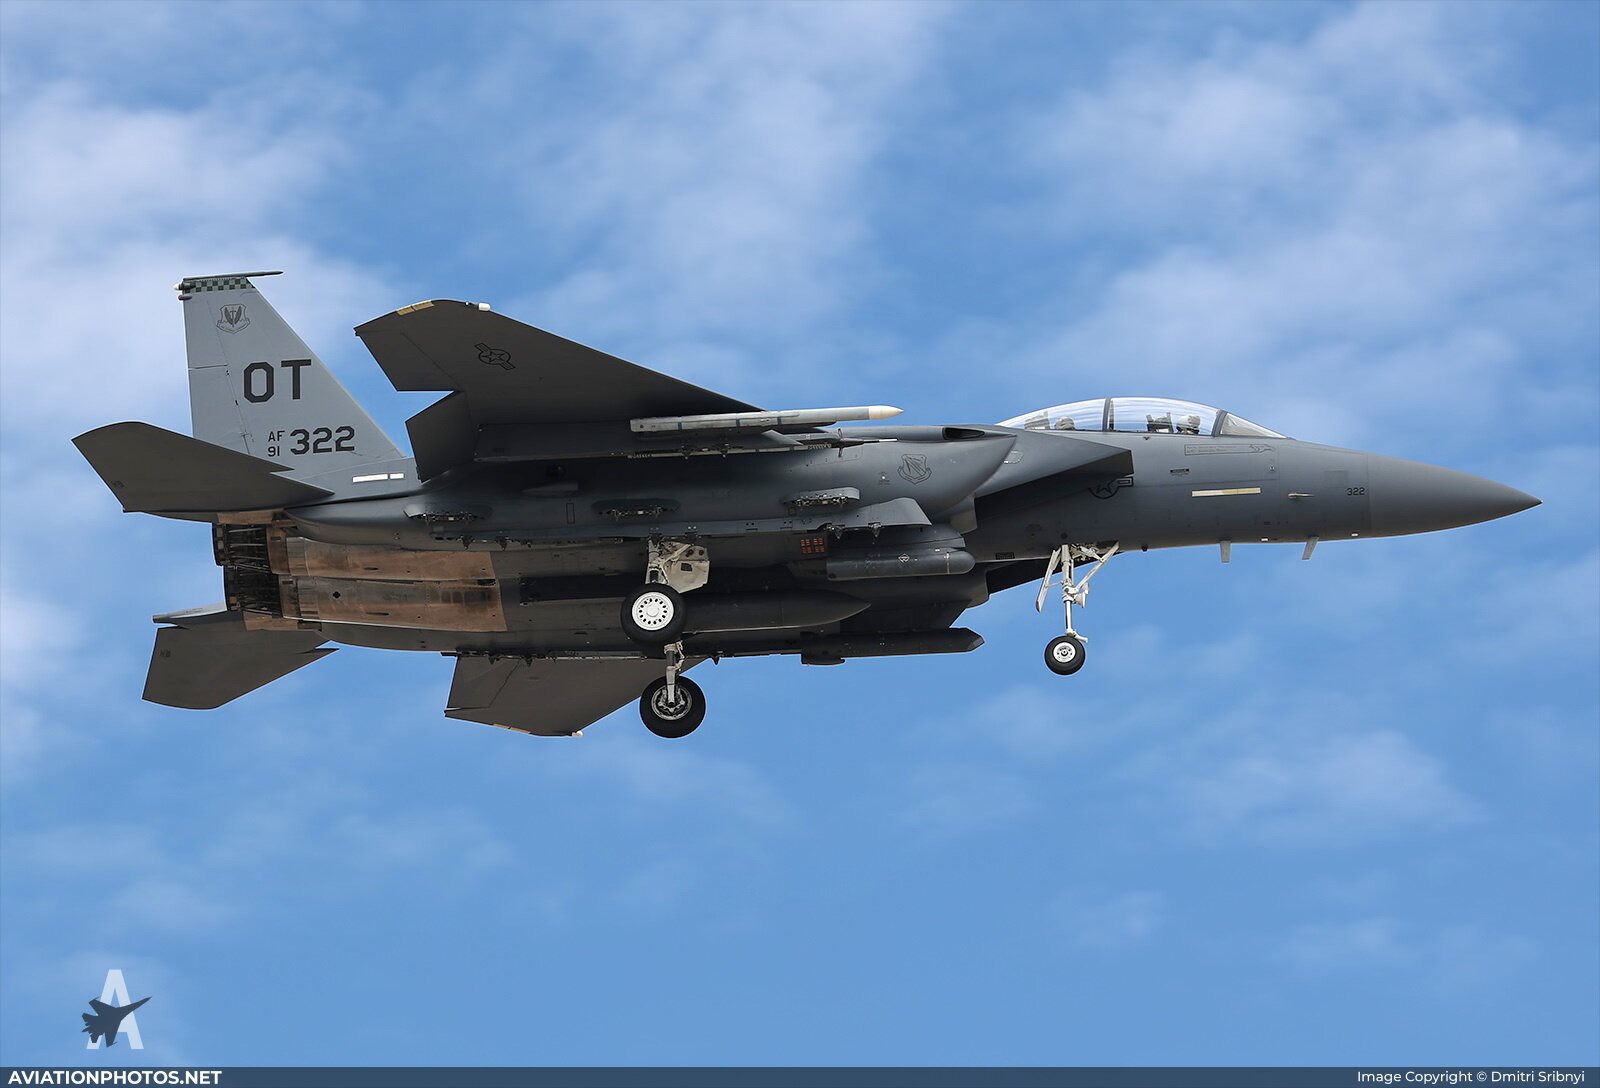 Американские истребители “F-15” оборудуют новейшей атомной бомбой B61-12